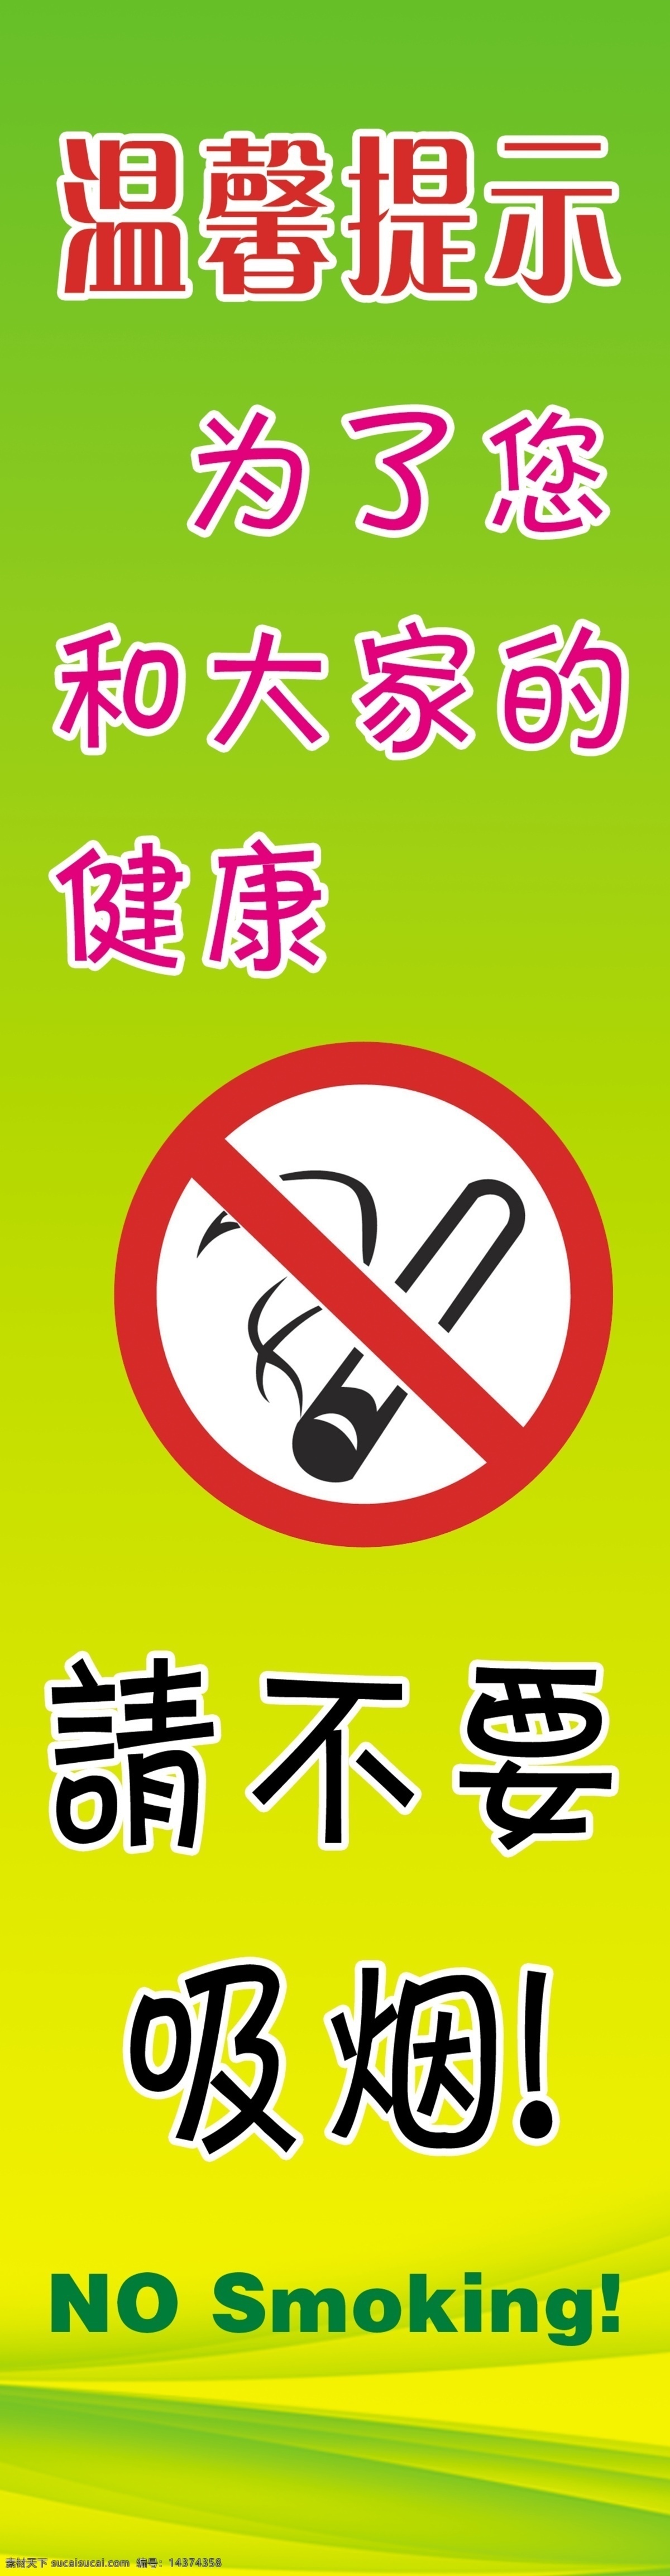 无烟单位 创建无烟单位 禁止吸烟 温馨提示 为了健康 英文 绿色背景 光 渐变背景 不要吸烟 警示语 禁烟标志 分层 源文件